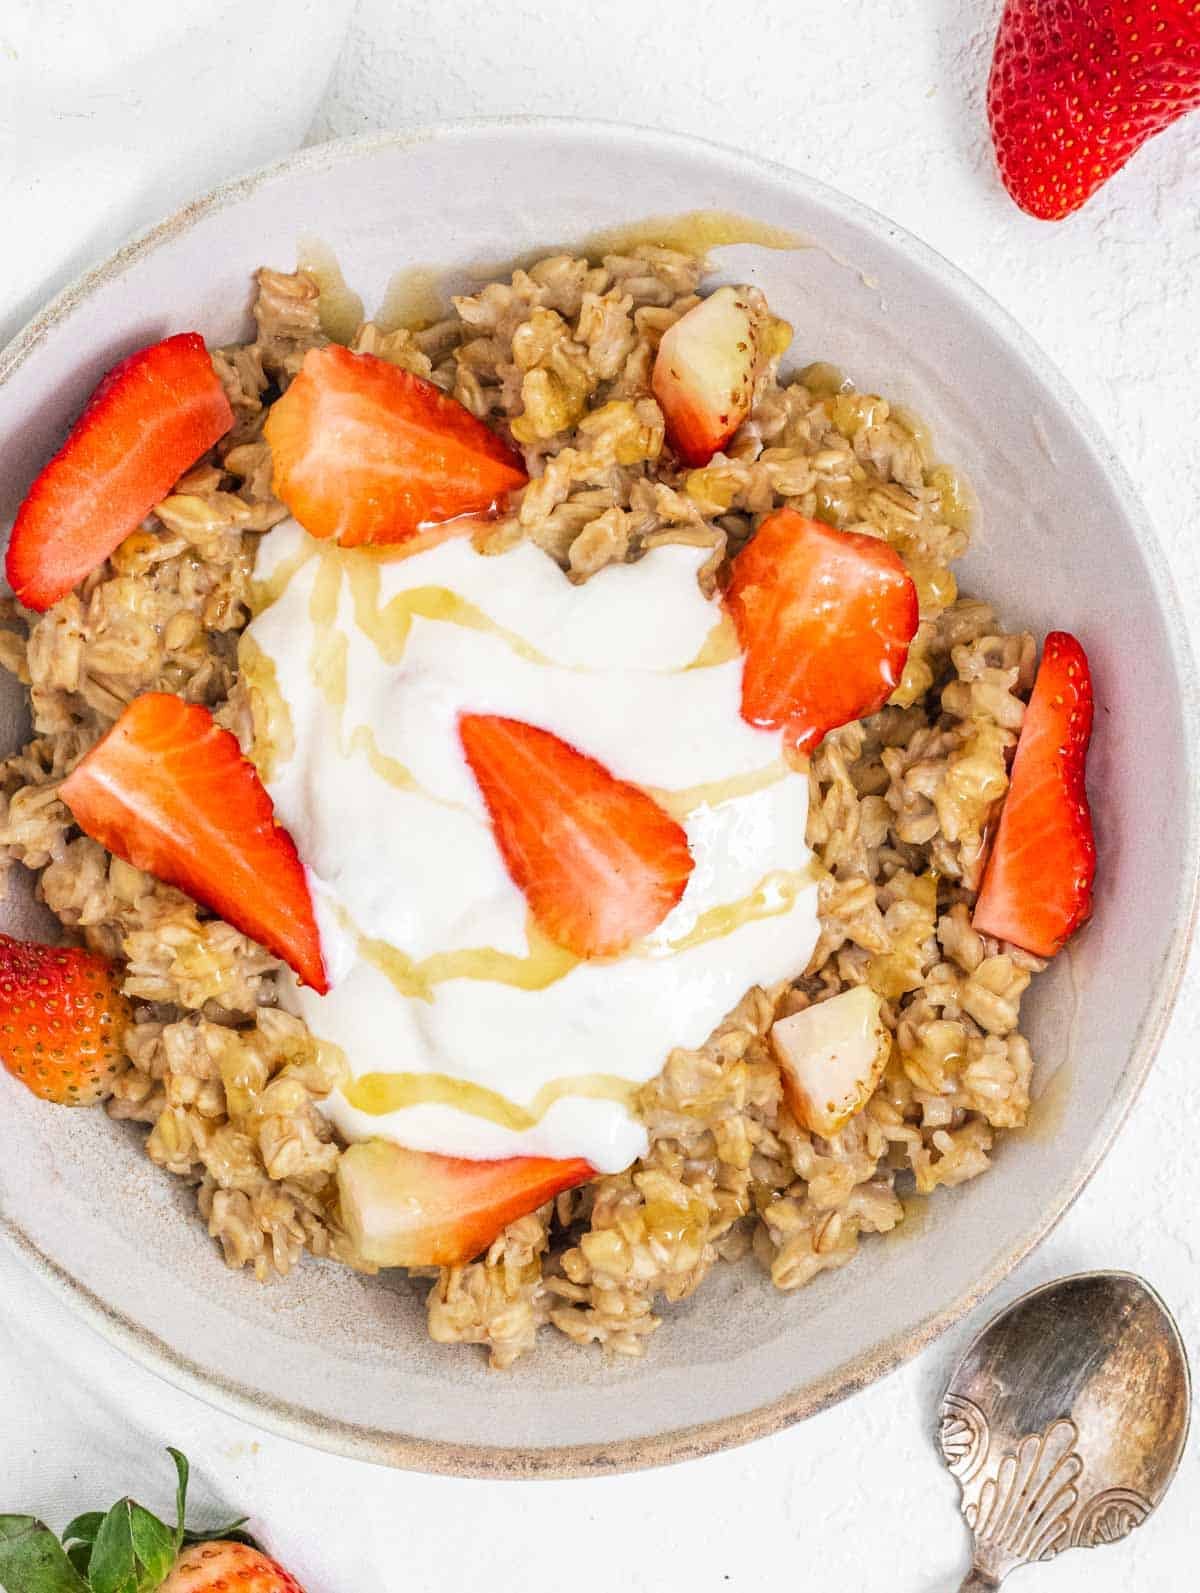 Oatmeal with yogurt and strawberries